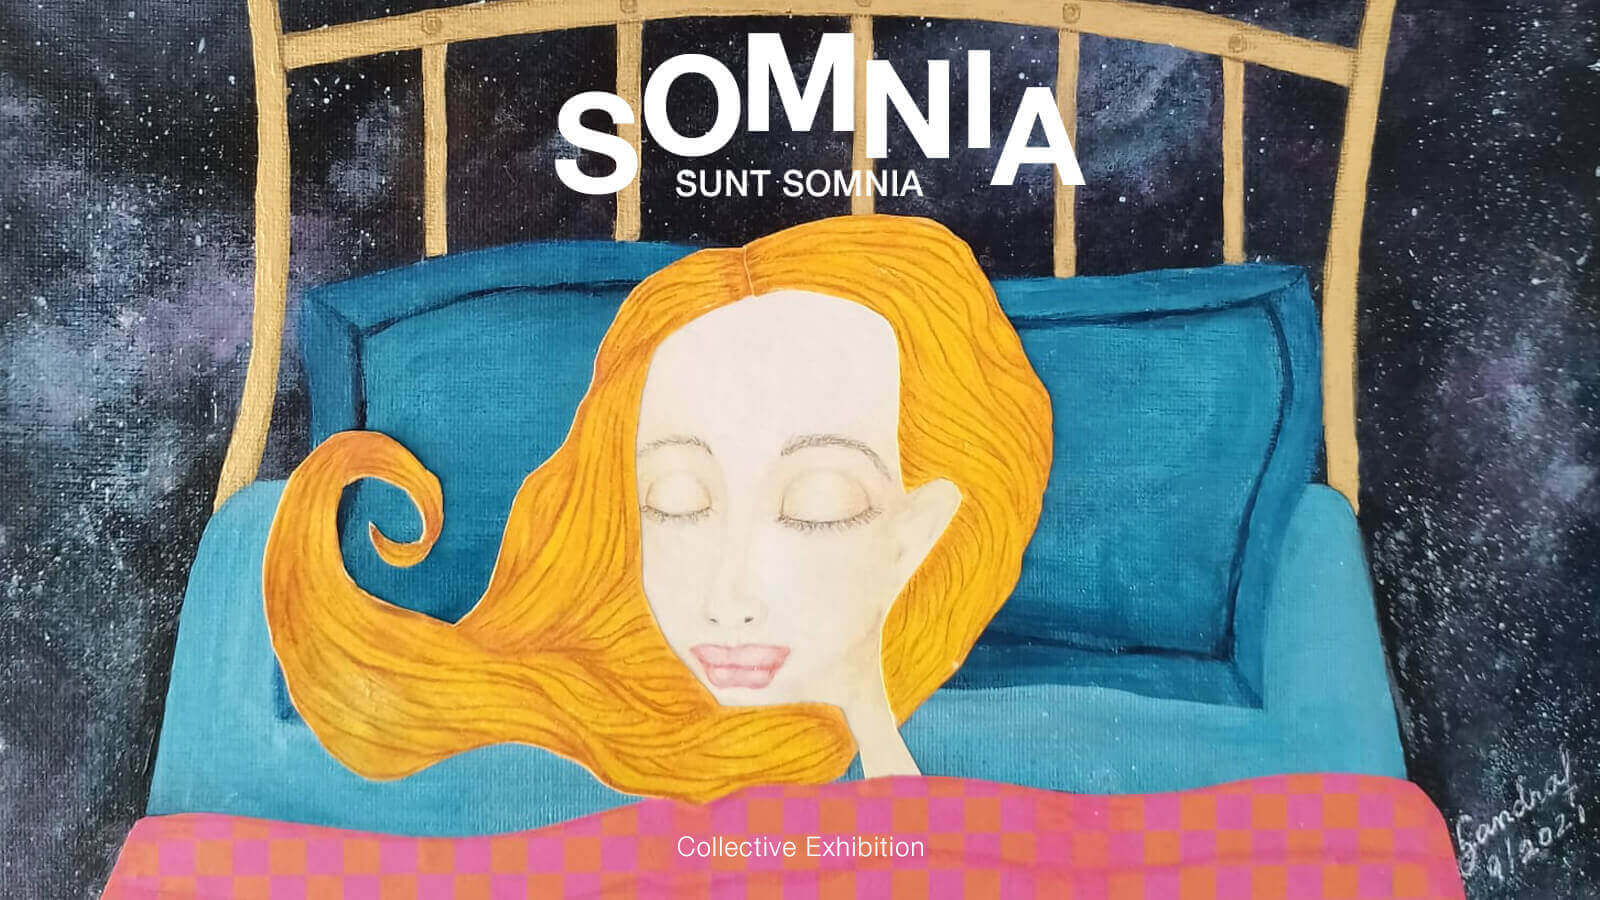 Sintora-Somnia-Sunt-Somnia-collective-art-Exhibition-Horno-Online-Art-Gallery-1600x900